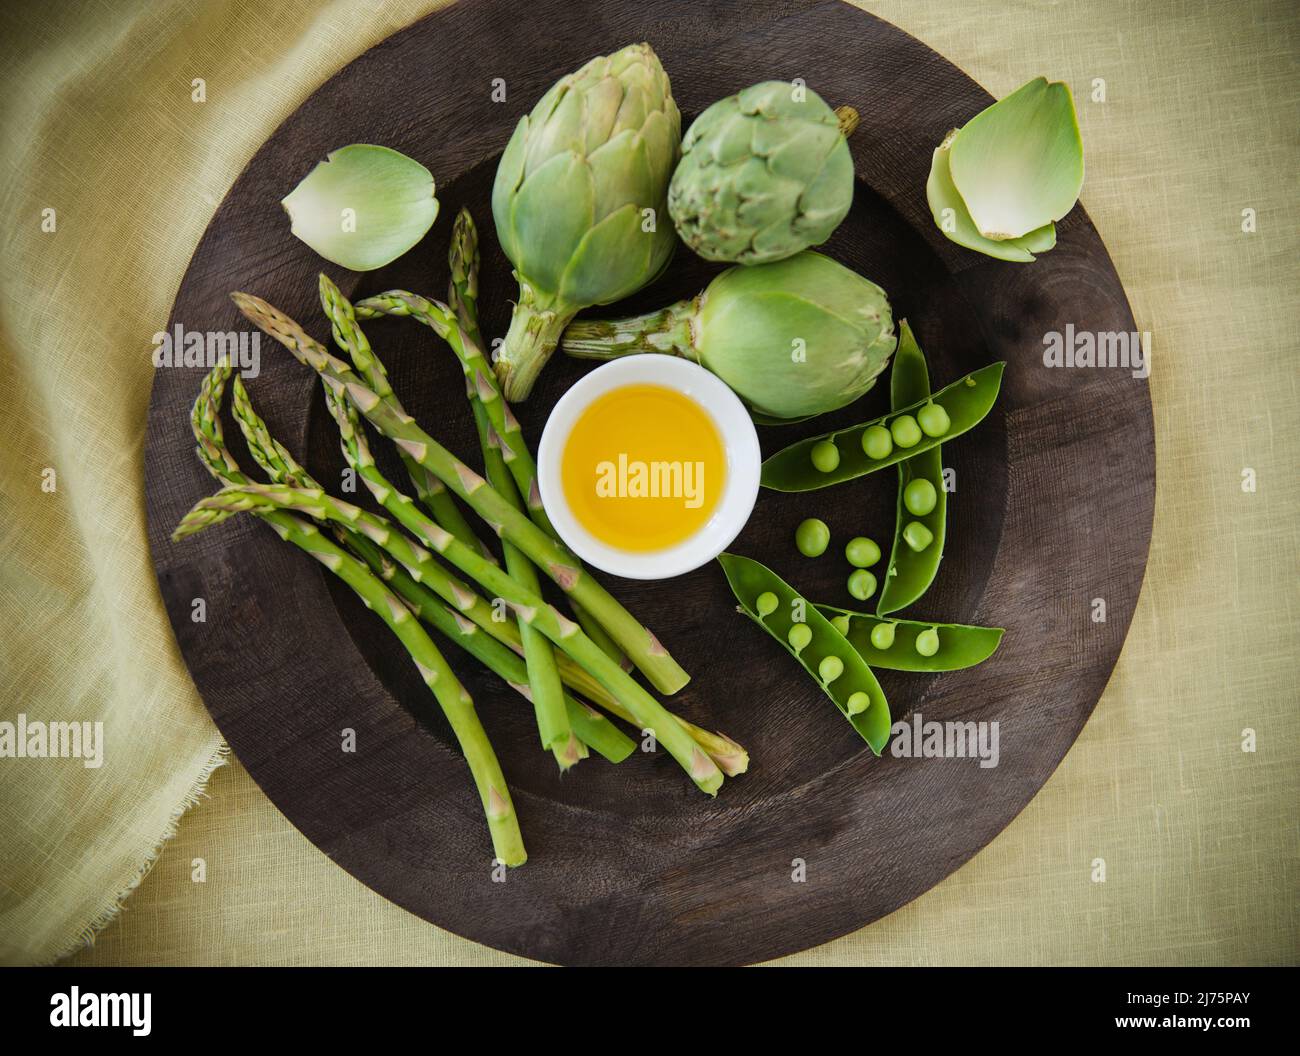 Verduras verdes mezcladas con aceite de oliva; espárragos, alcachofas y guisantes Foto de stock